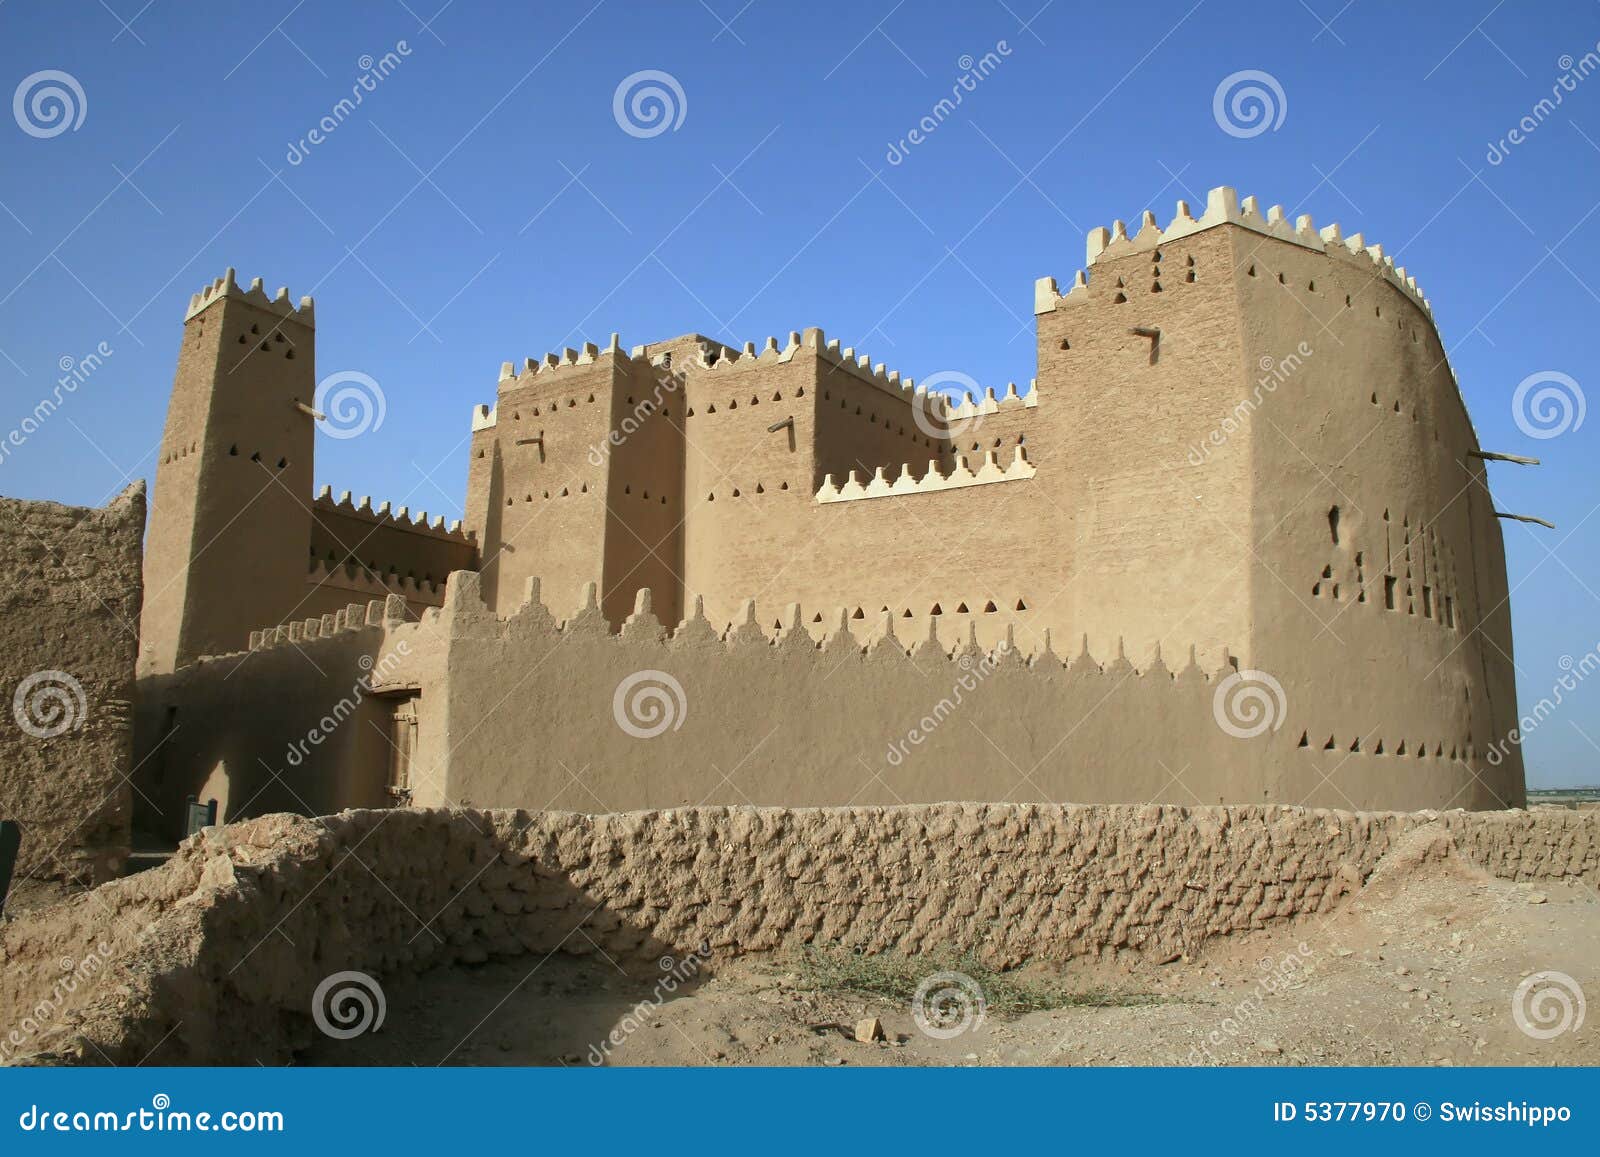 saad ibn saud palace